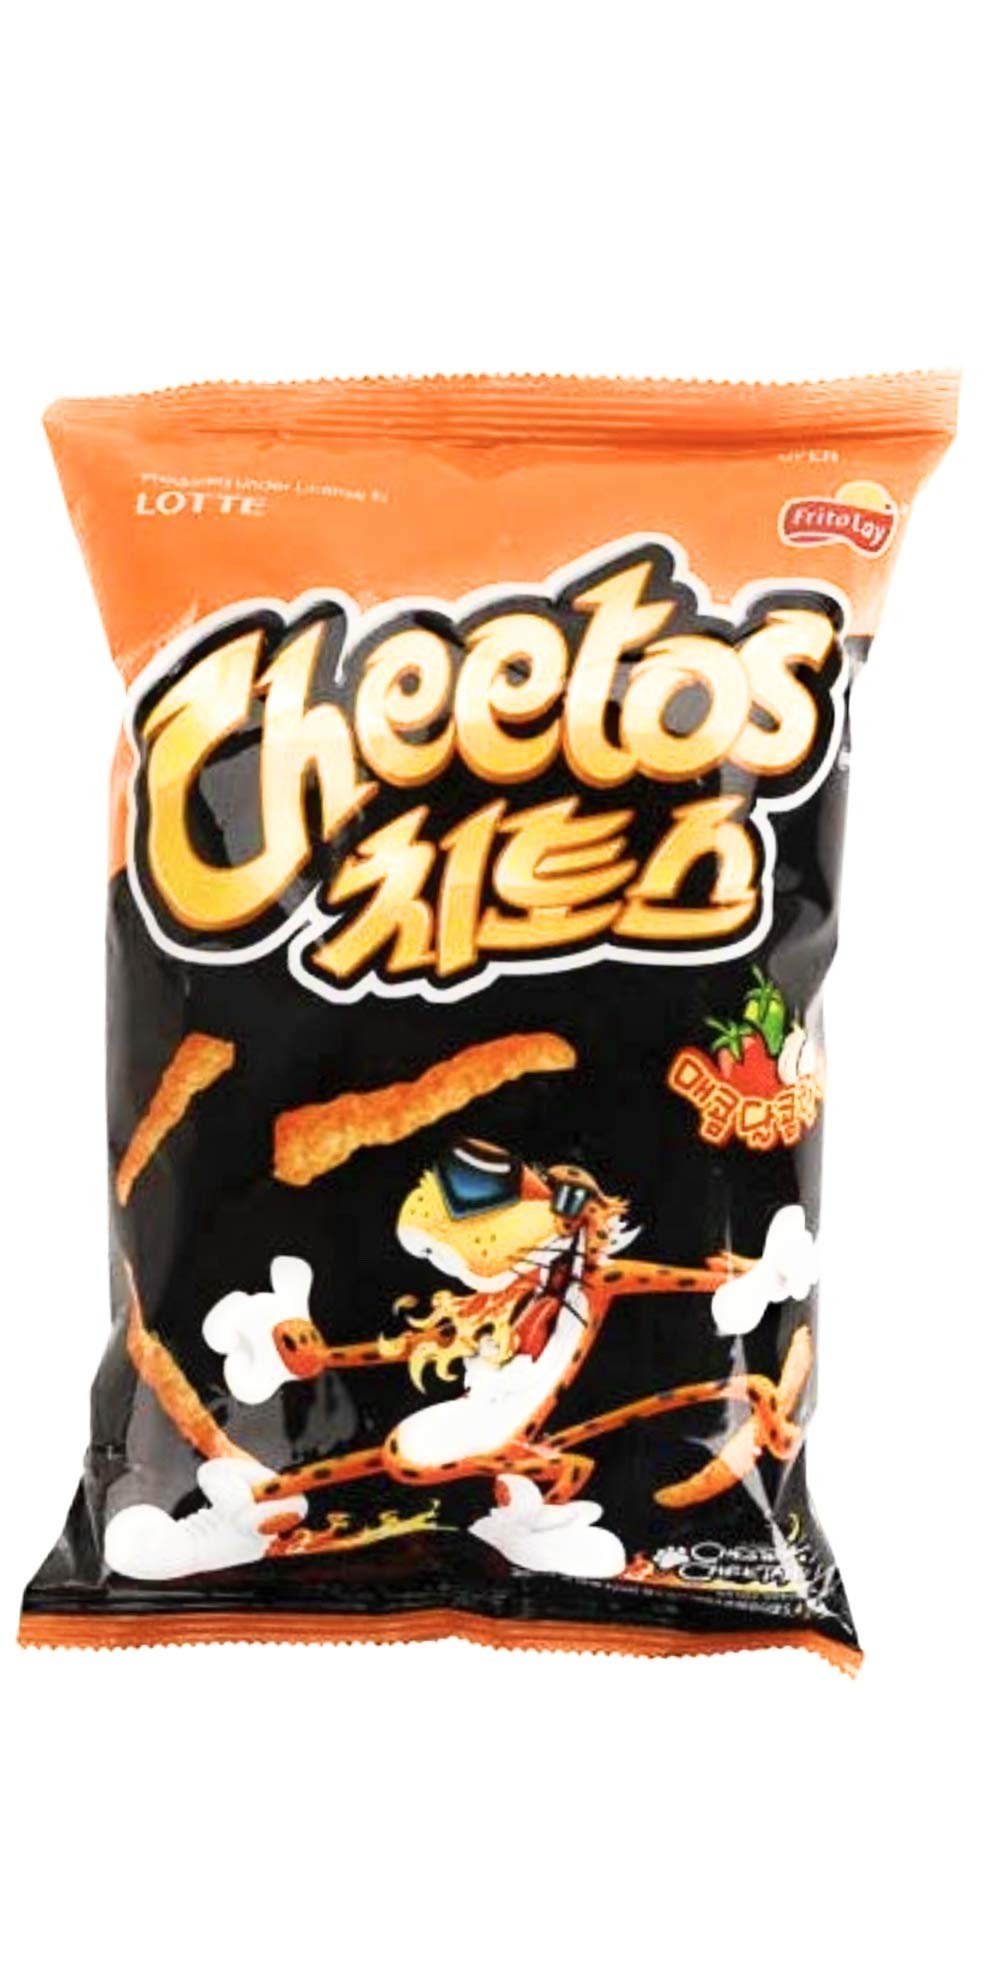 Lotte Cheetos Sweet Spicy Flavor 178g Korean Snacks